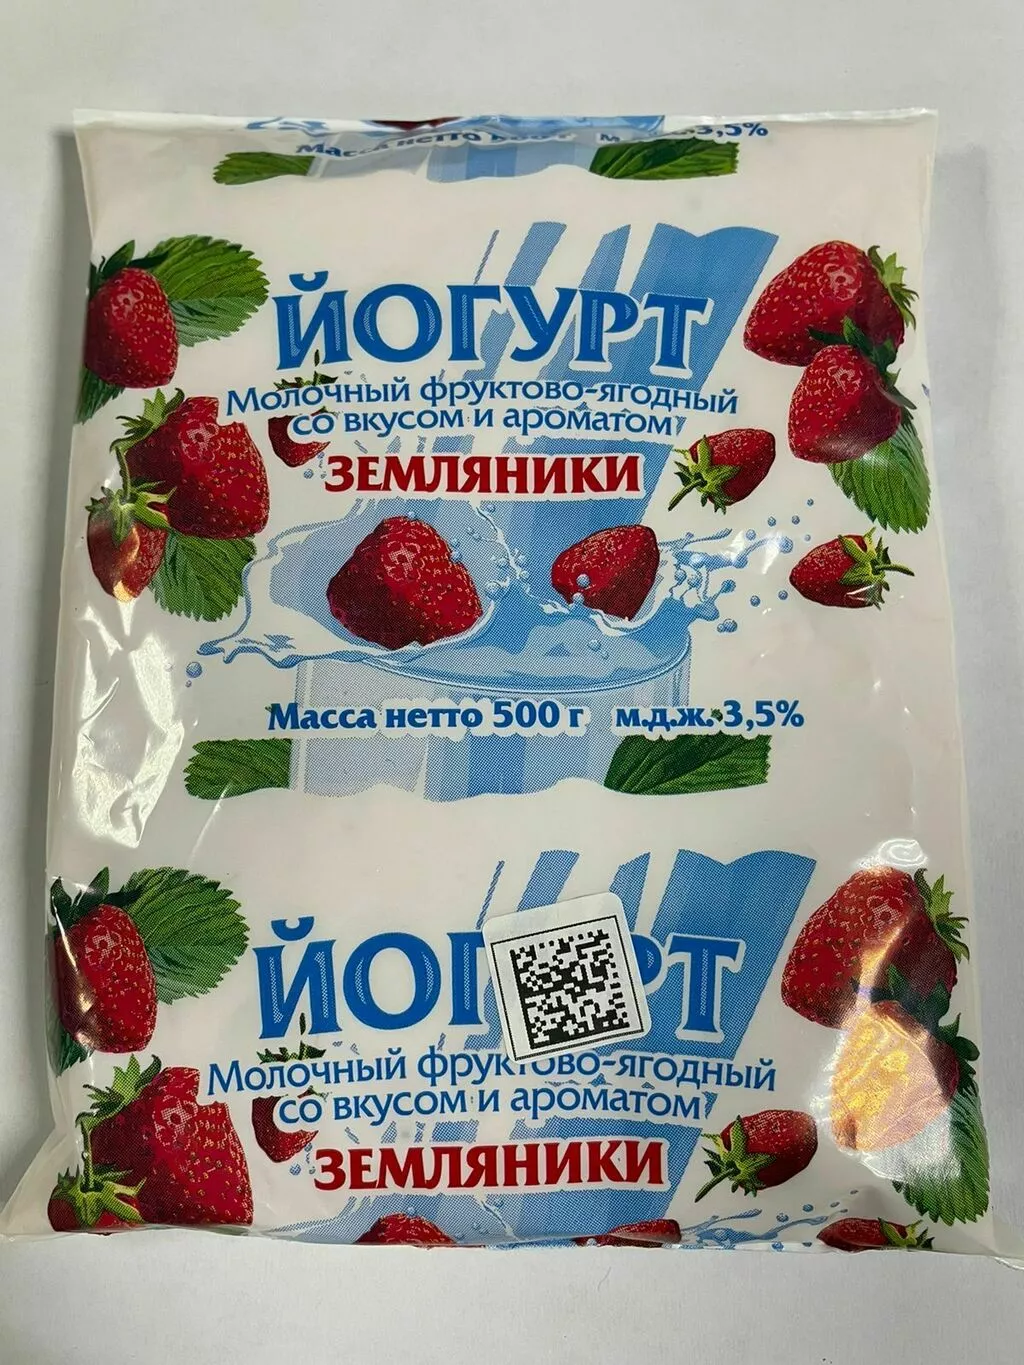 молочные продукты в ассортименте в Иркутске и Иркутской области 7